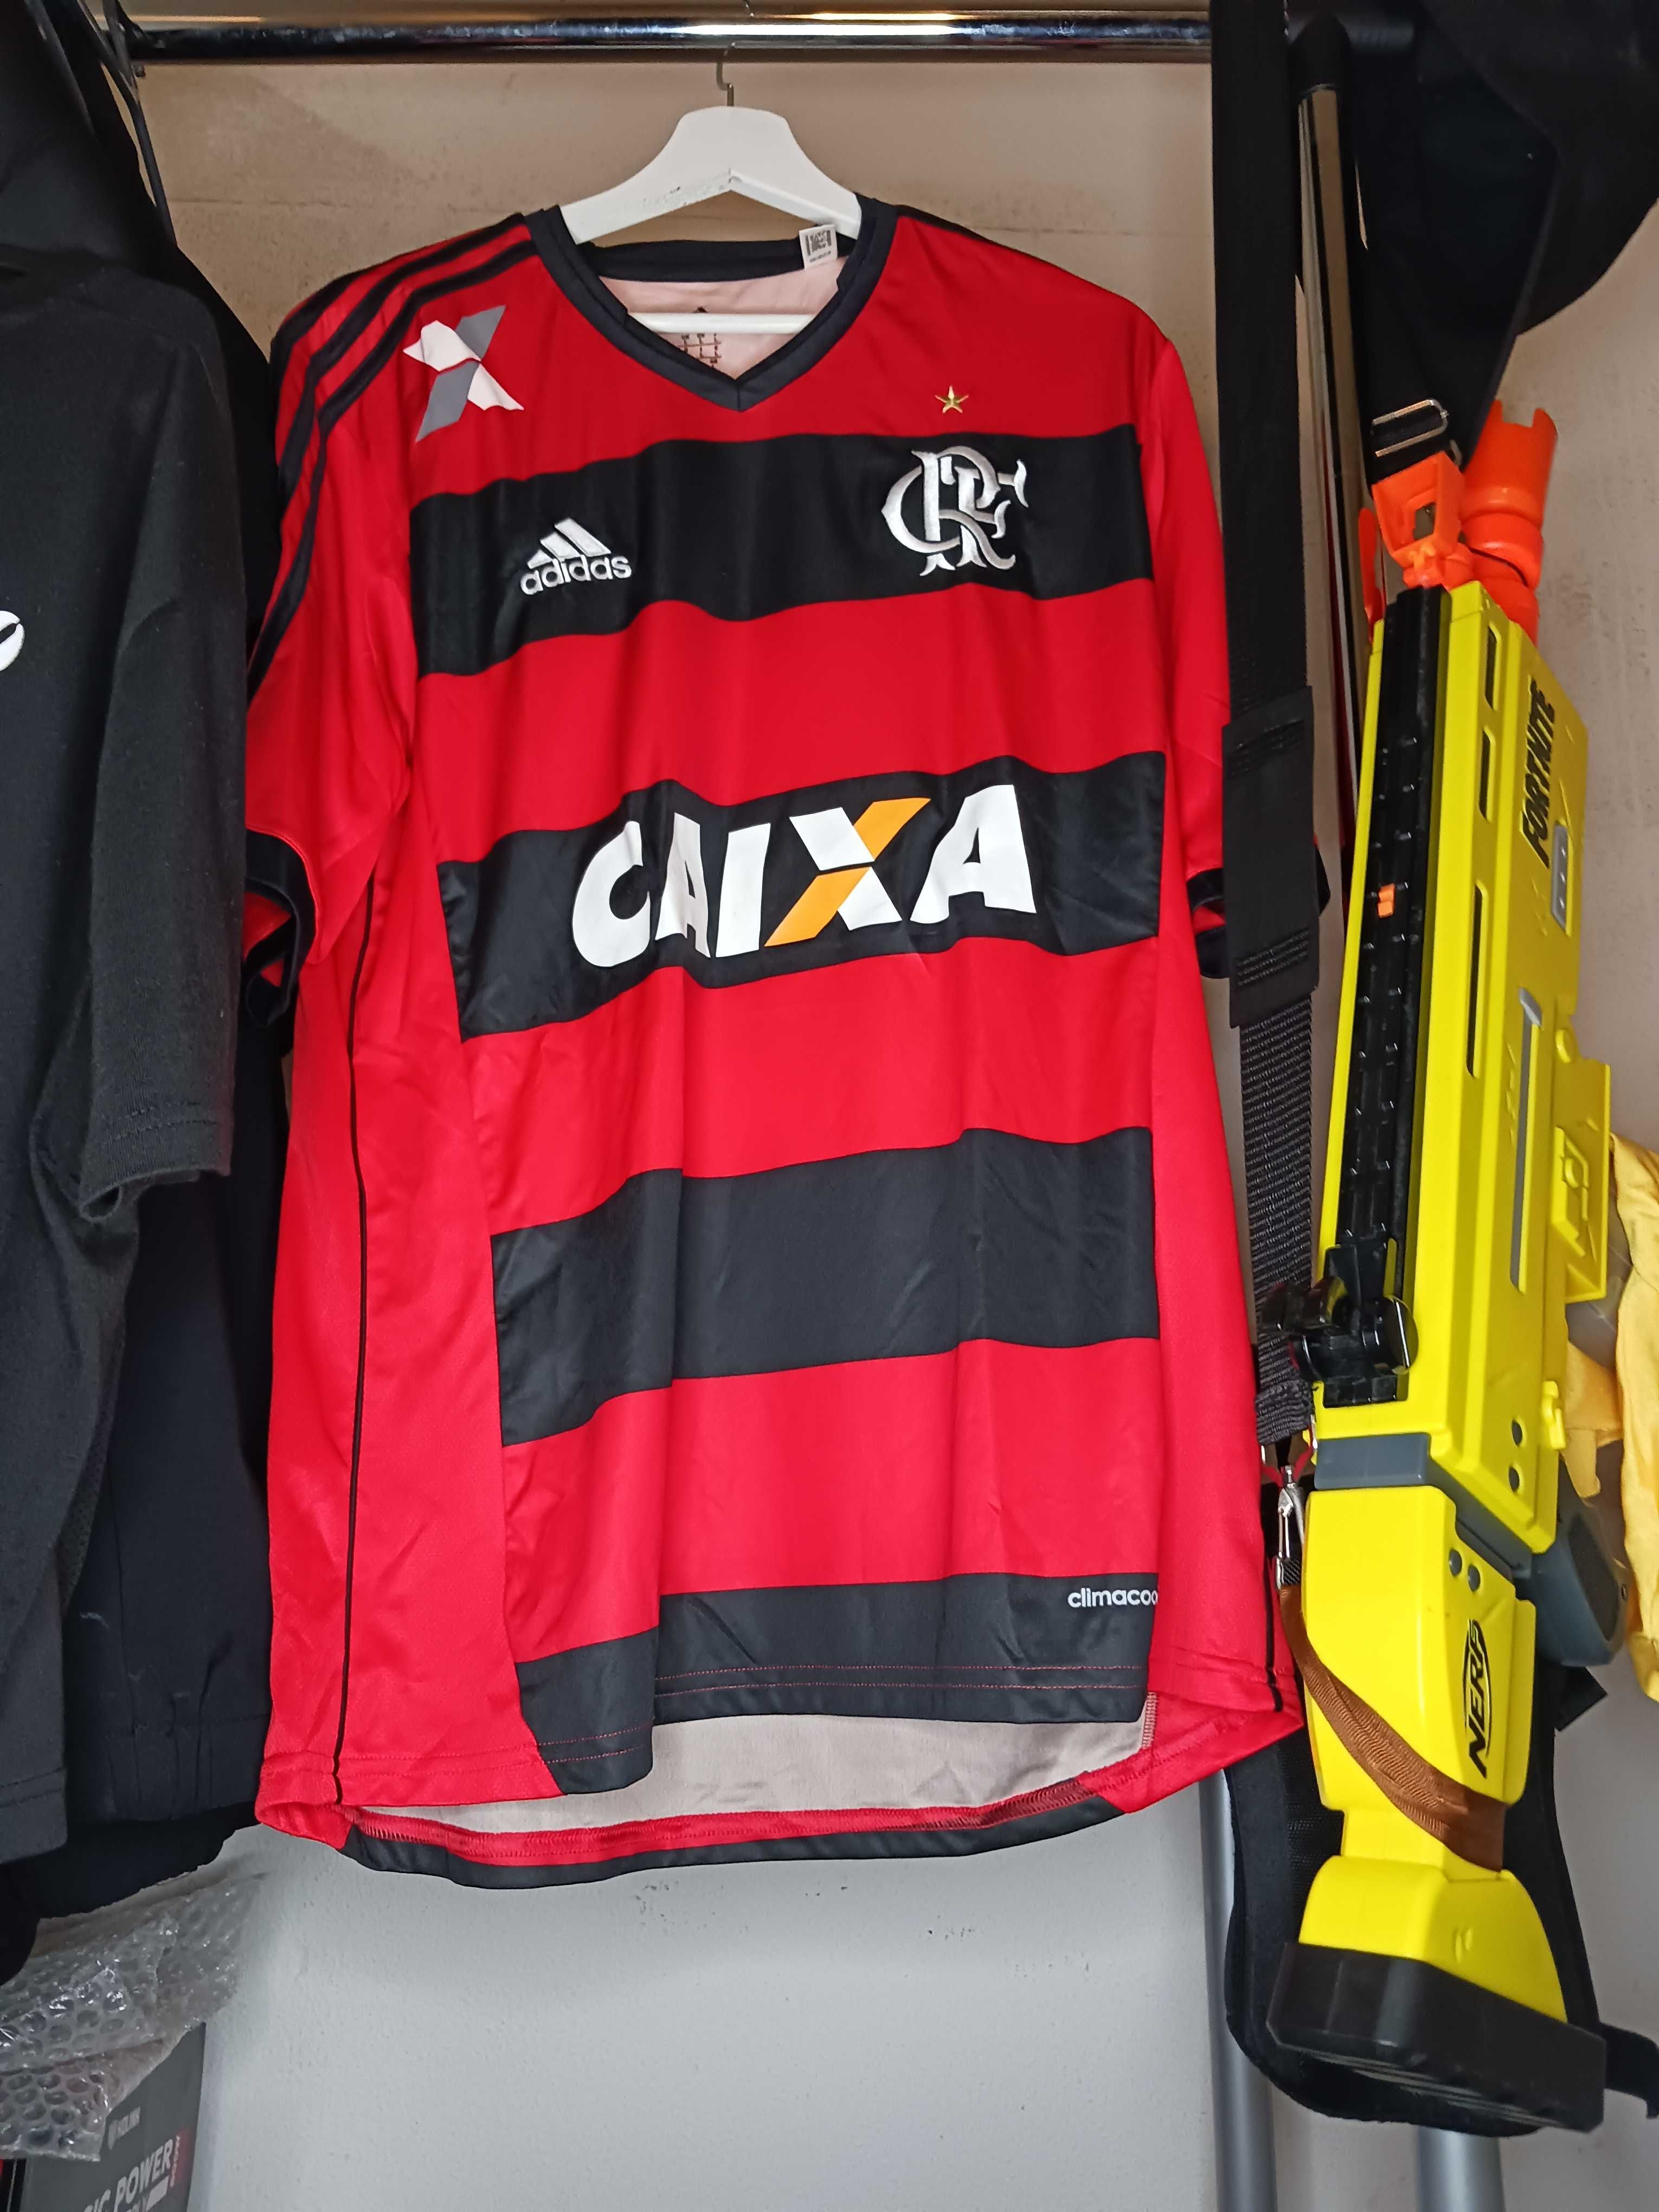 Camisas do flamengo (algumas foram usadas pela 1a equipa em jogo)